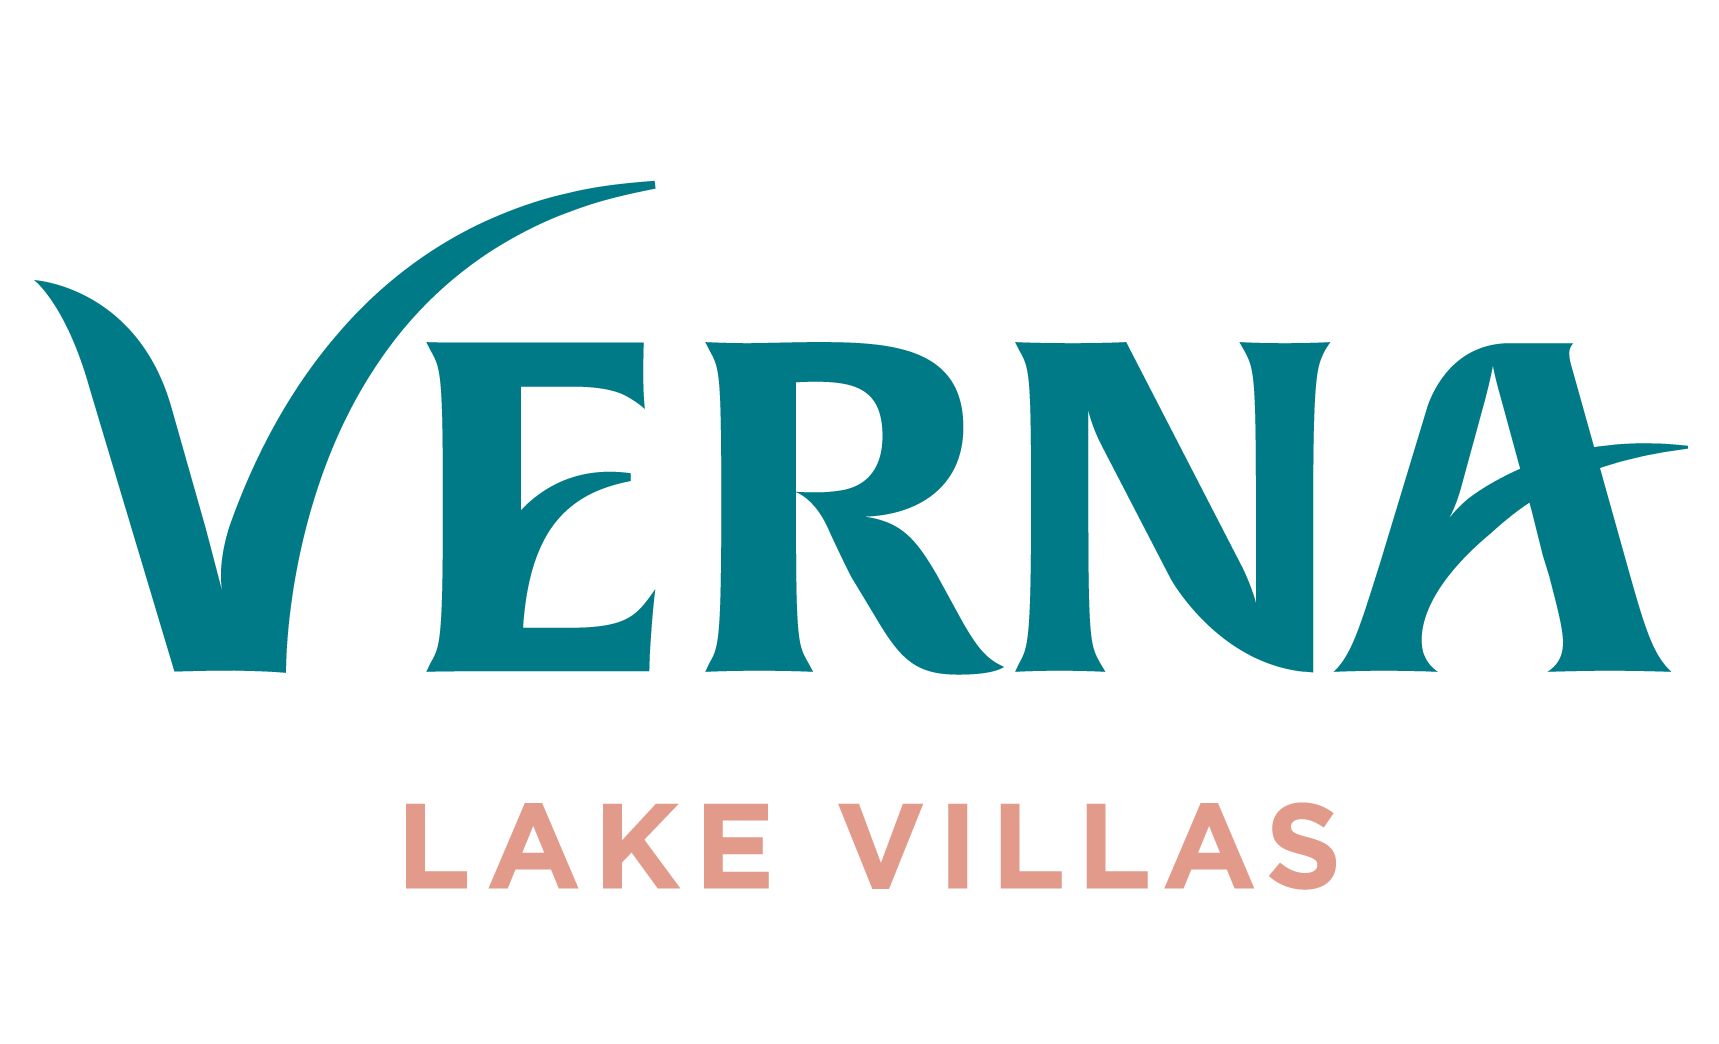 Verna Lake Villas logo